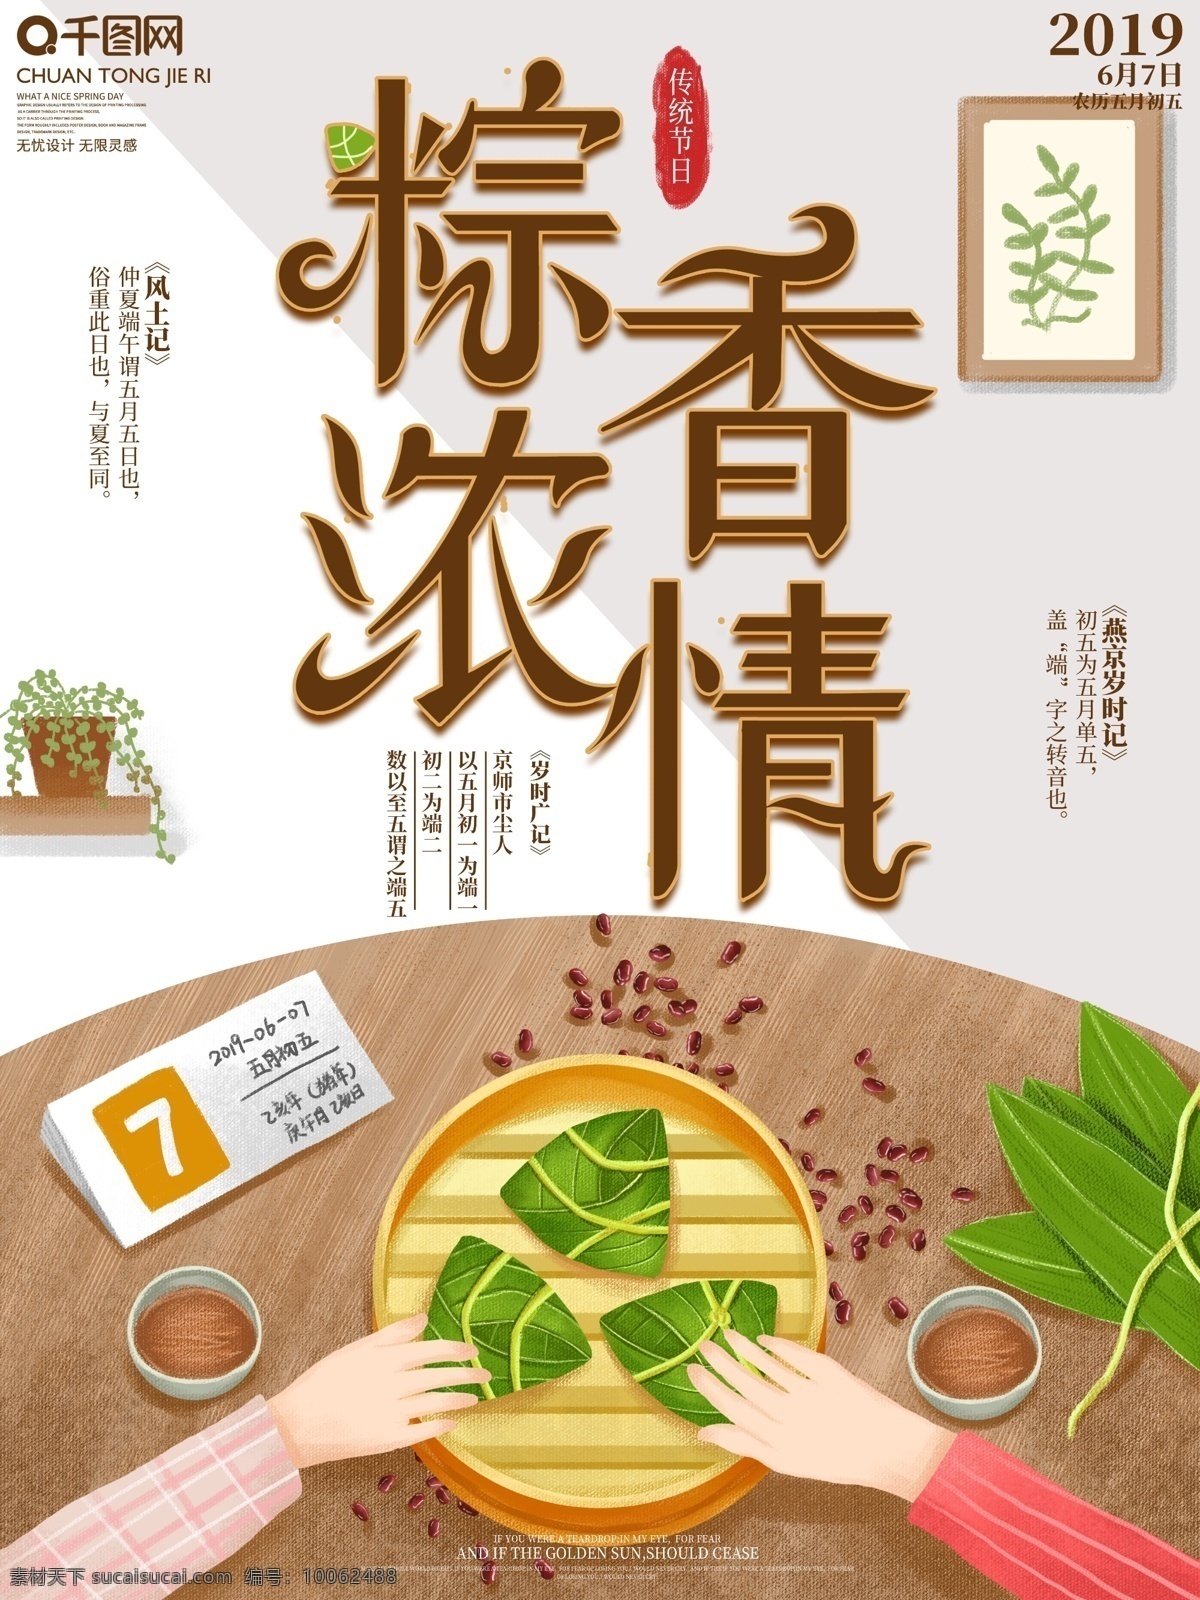 原创 手绘 端午节 节日 宣传海报 宣传 海报 中国传统 粽子 粽香浓情 卡通 插画